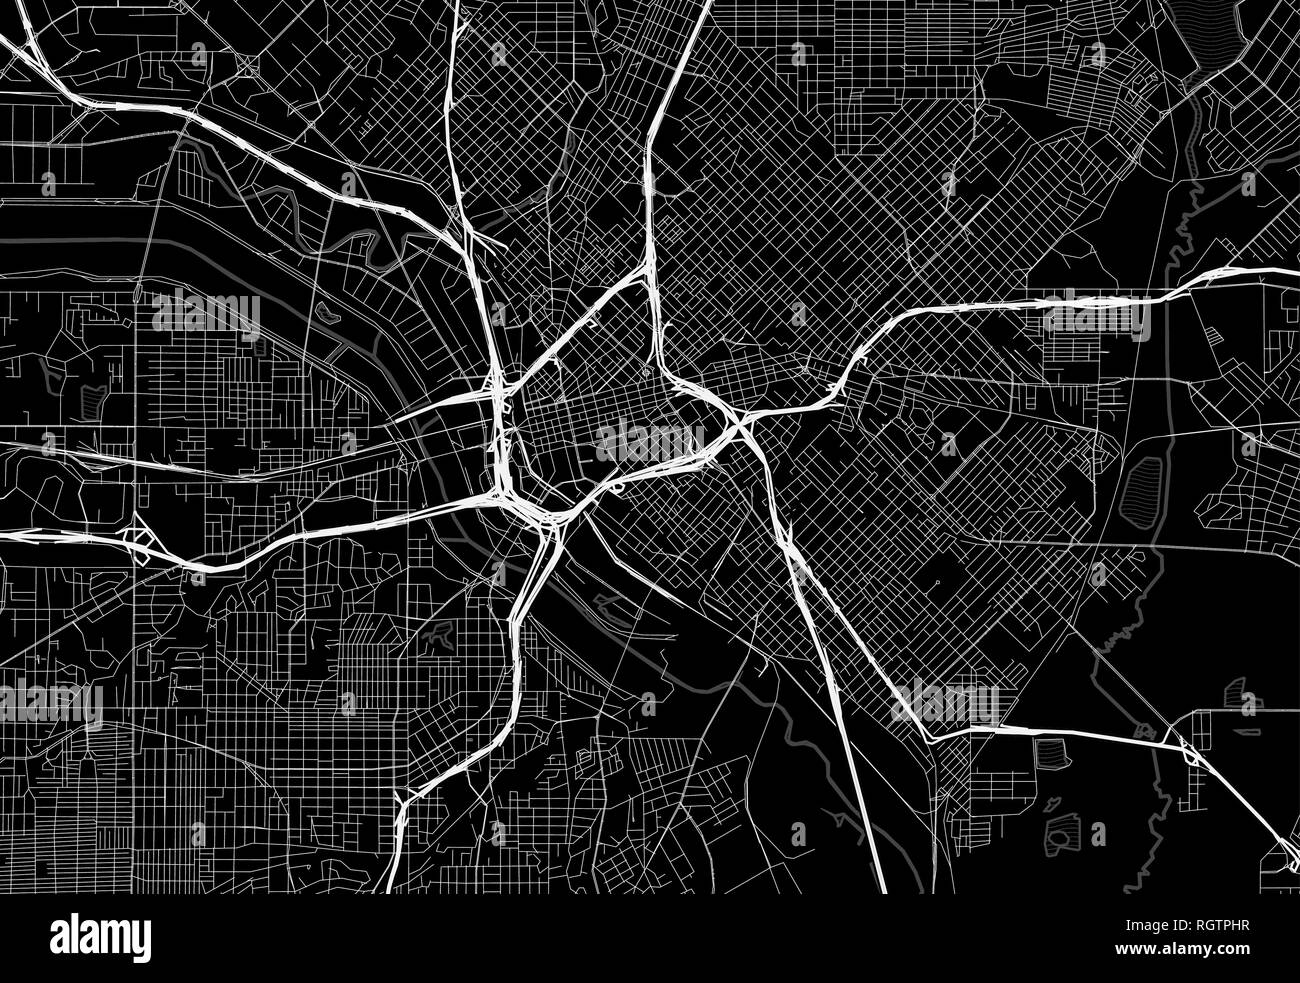 Schwarze Karte von Downtown Dallas, USA Dieser Vektor artmap ist als dekorativer Hintergrund oder eine einmalige Reise Zeichen erstellt. Stock Vektor